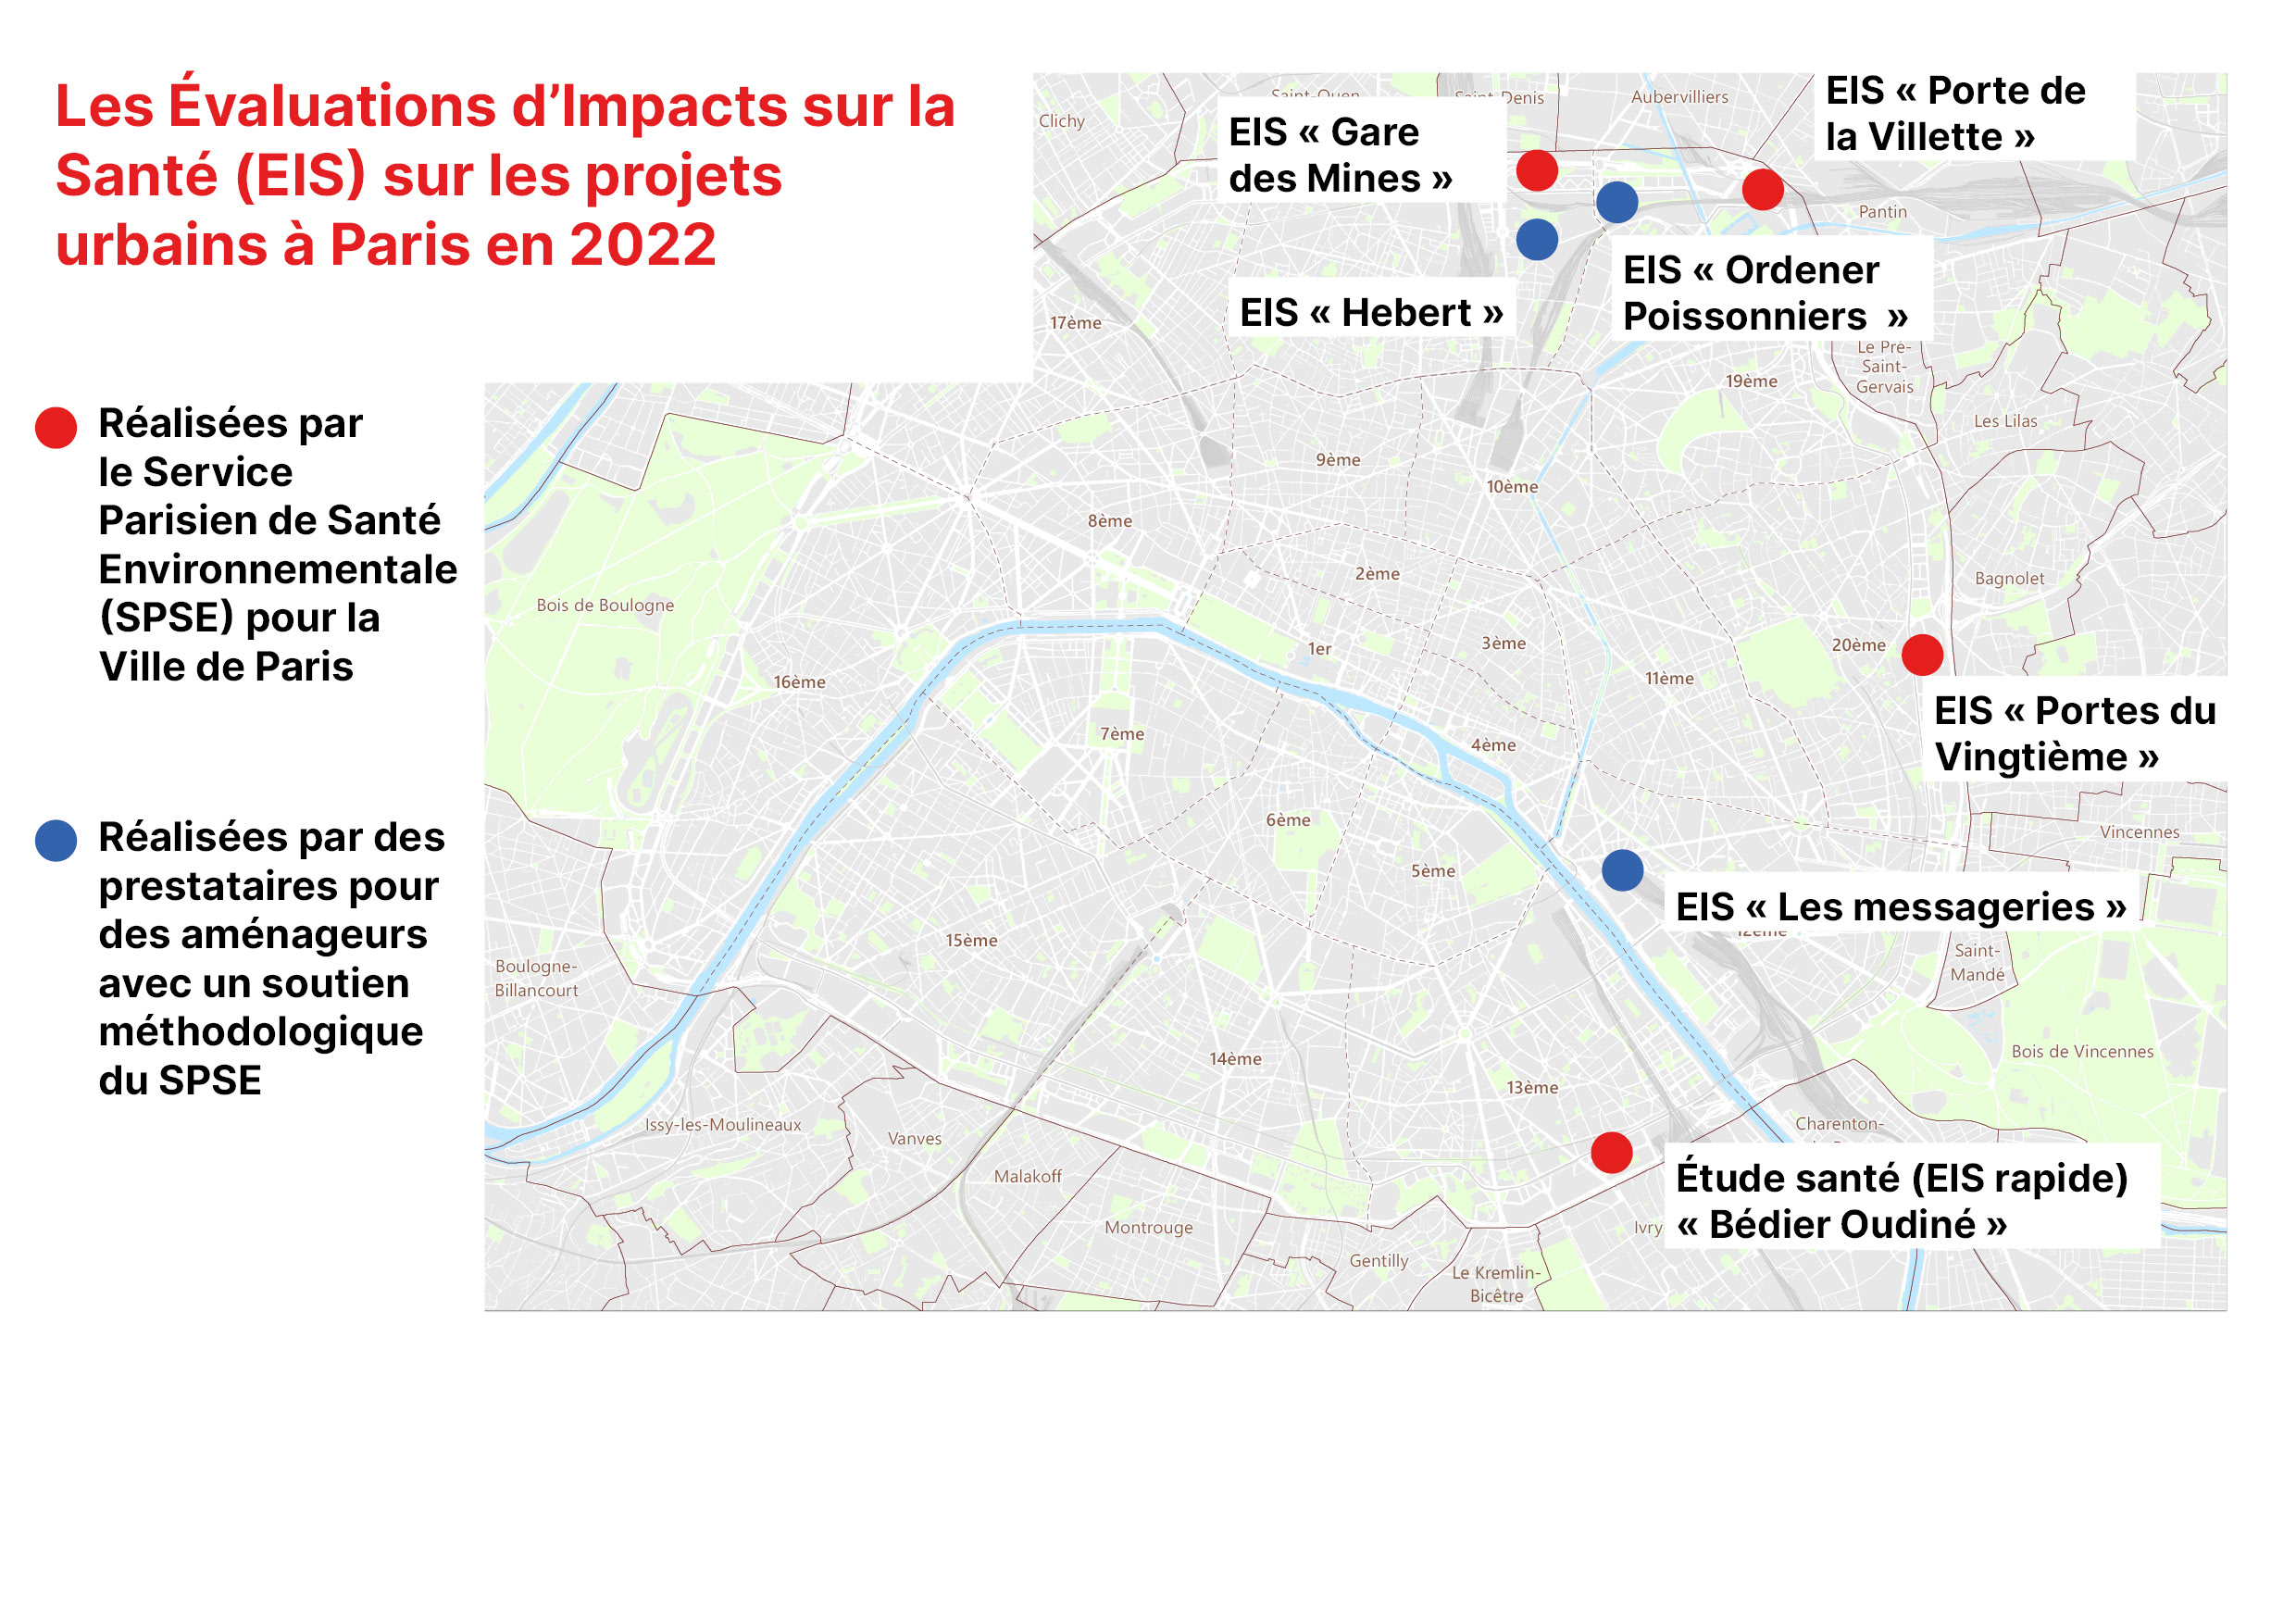 Les évaluations d'impact sur la santé (EIS) sur les projets urbains à Paris en 2022